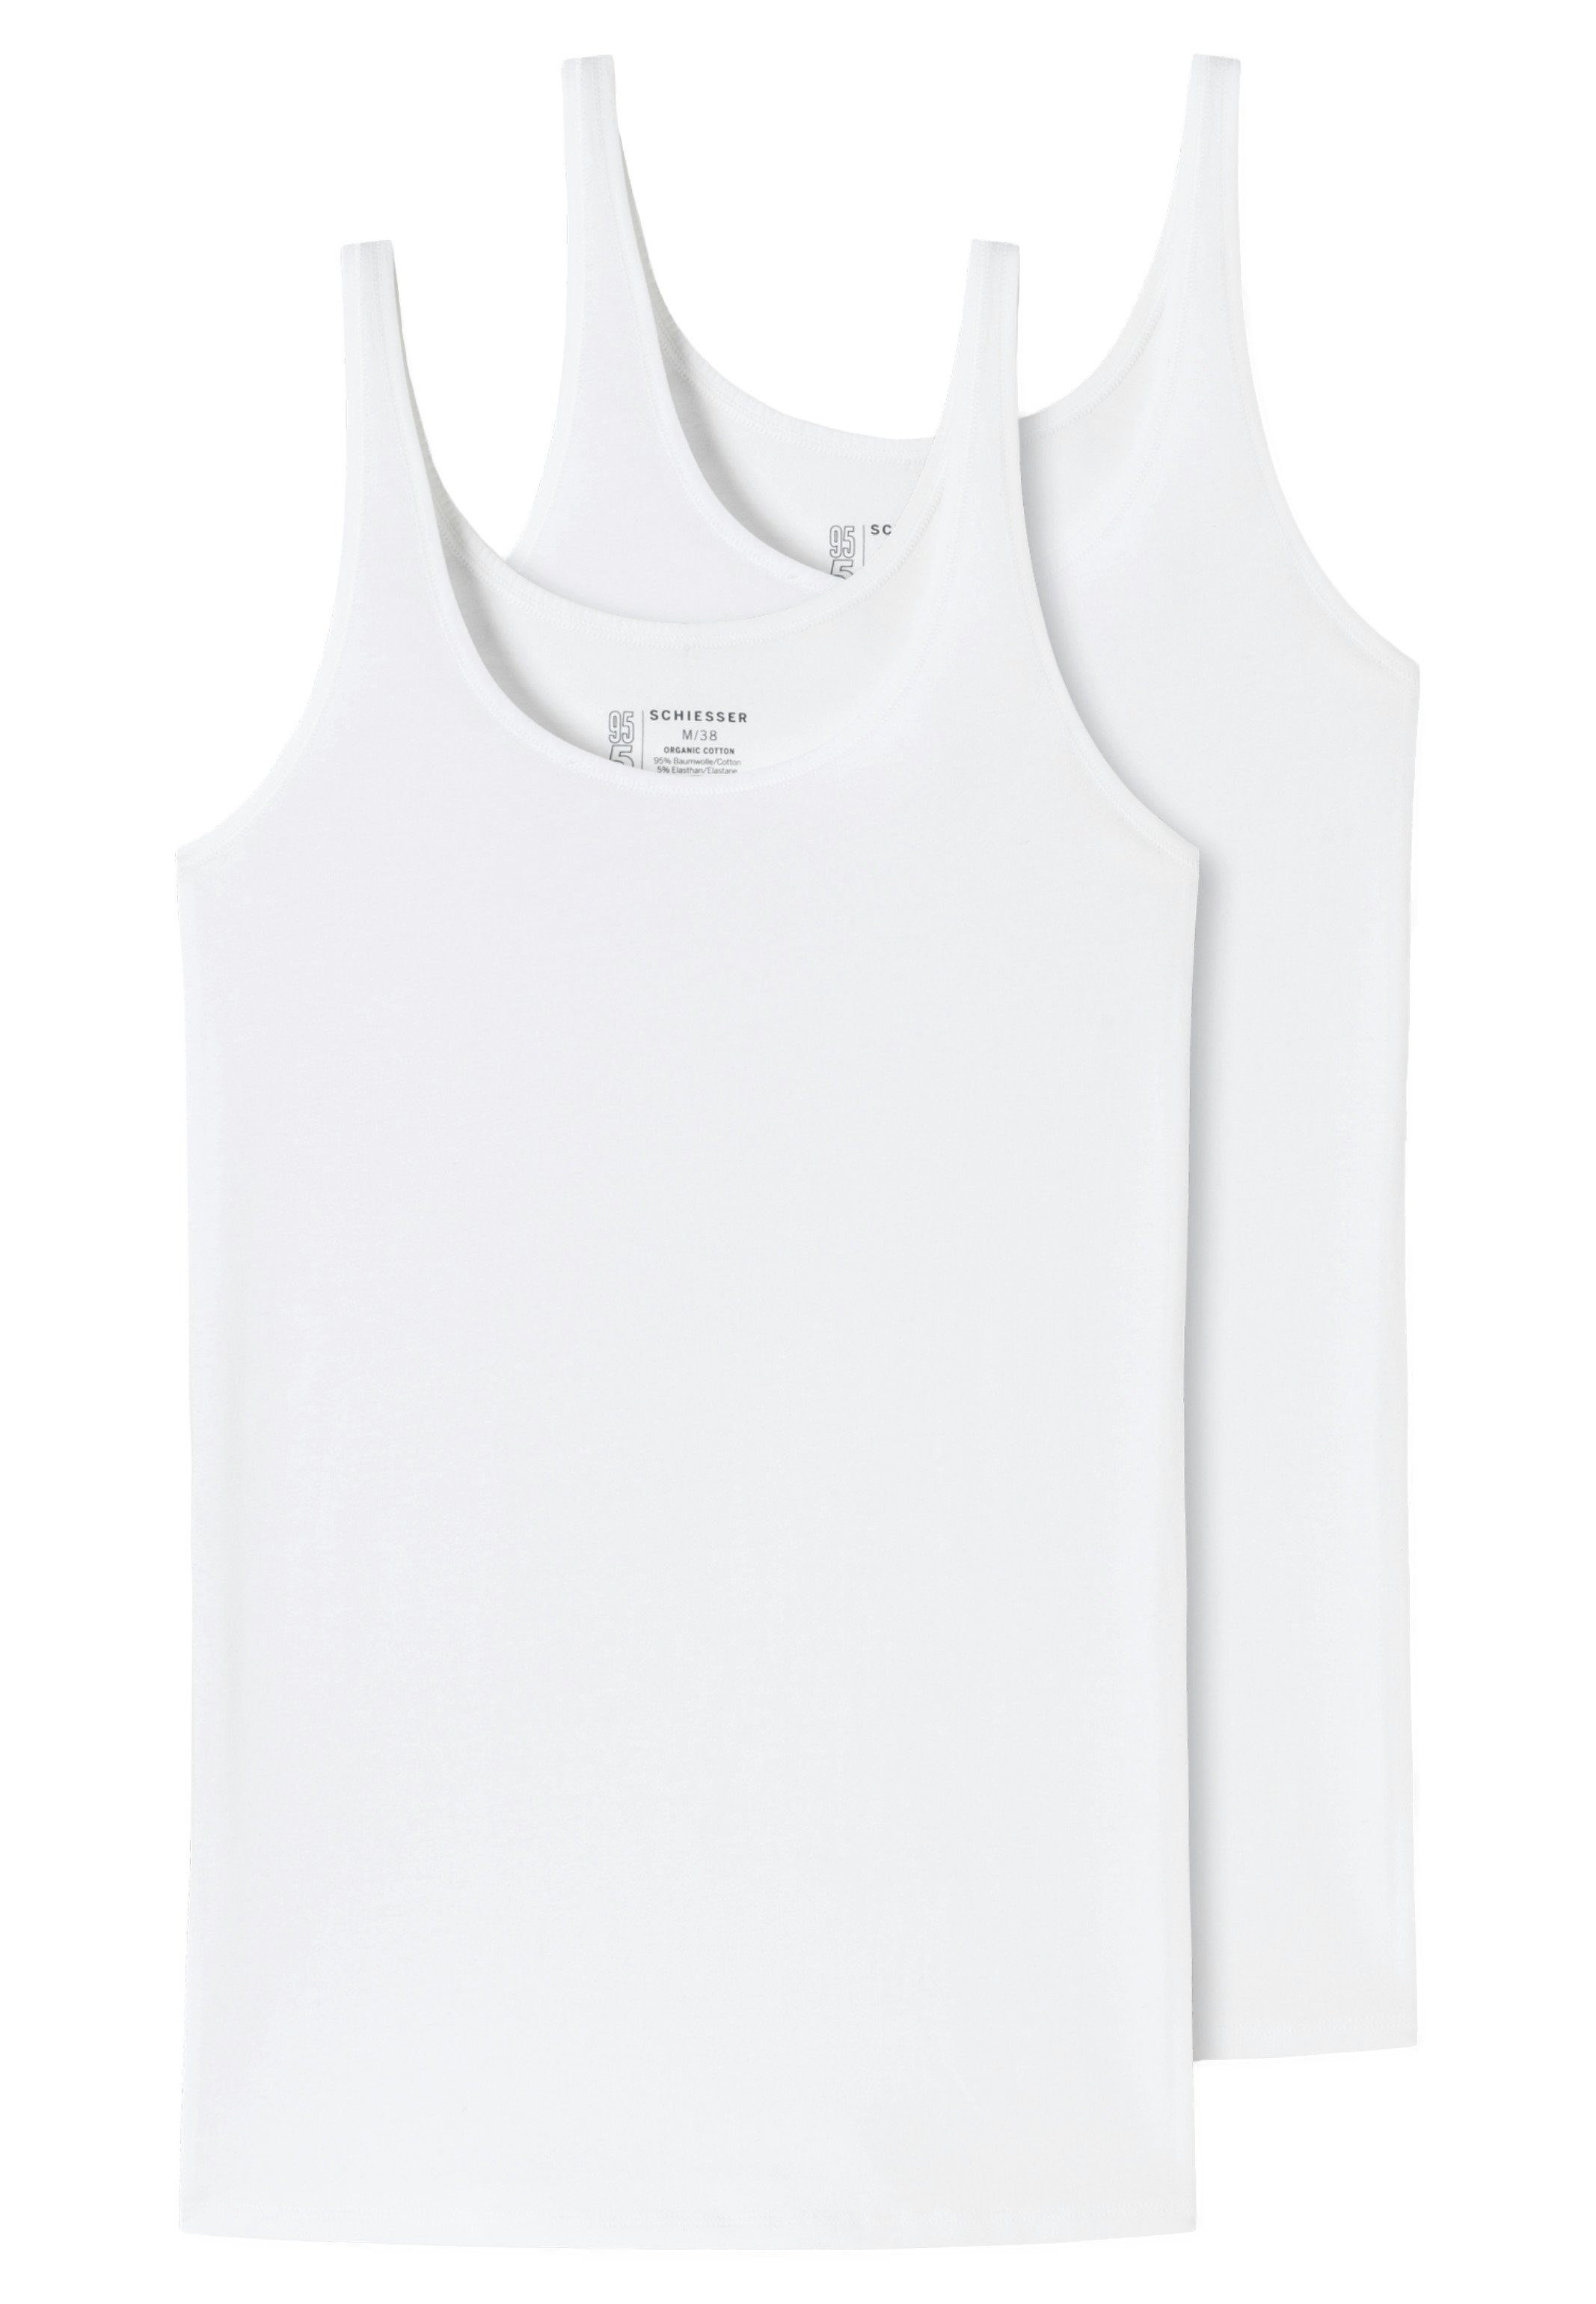 - - / Cotton Baumwolle Unterhemd 2-St) Organic Weiß Schiesser 95/5 2er Pack Unterhemd Top (Spar-Set,